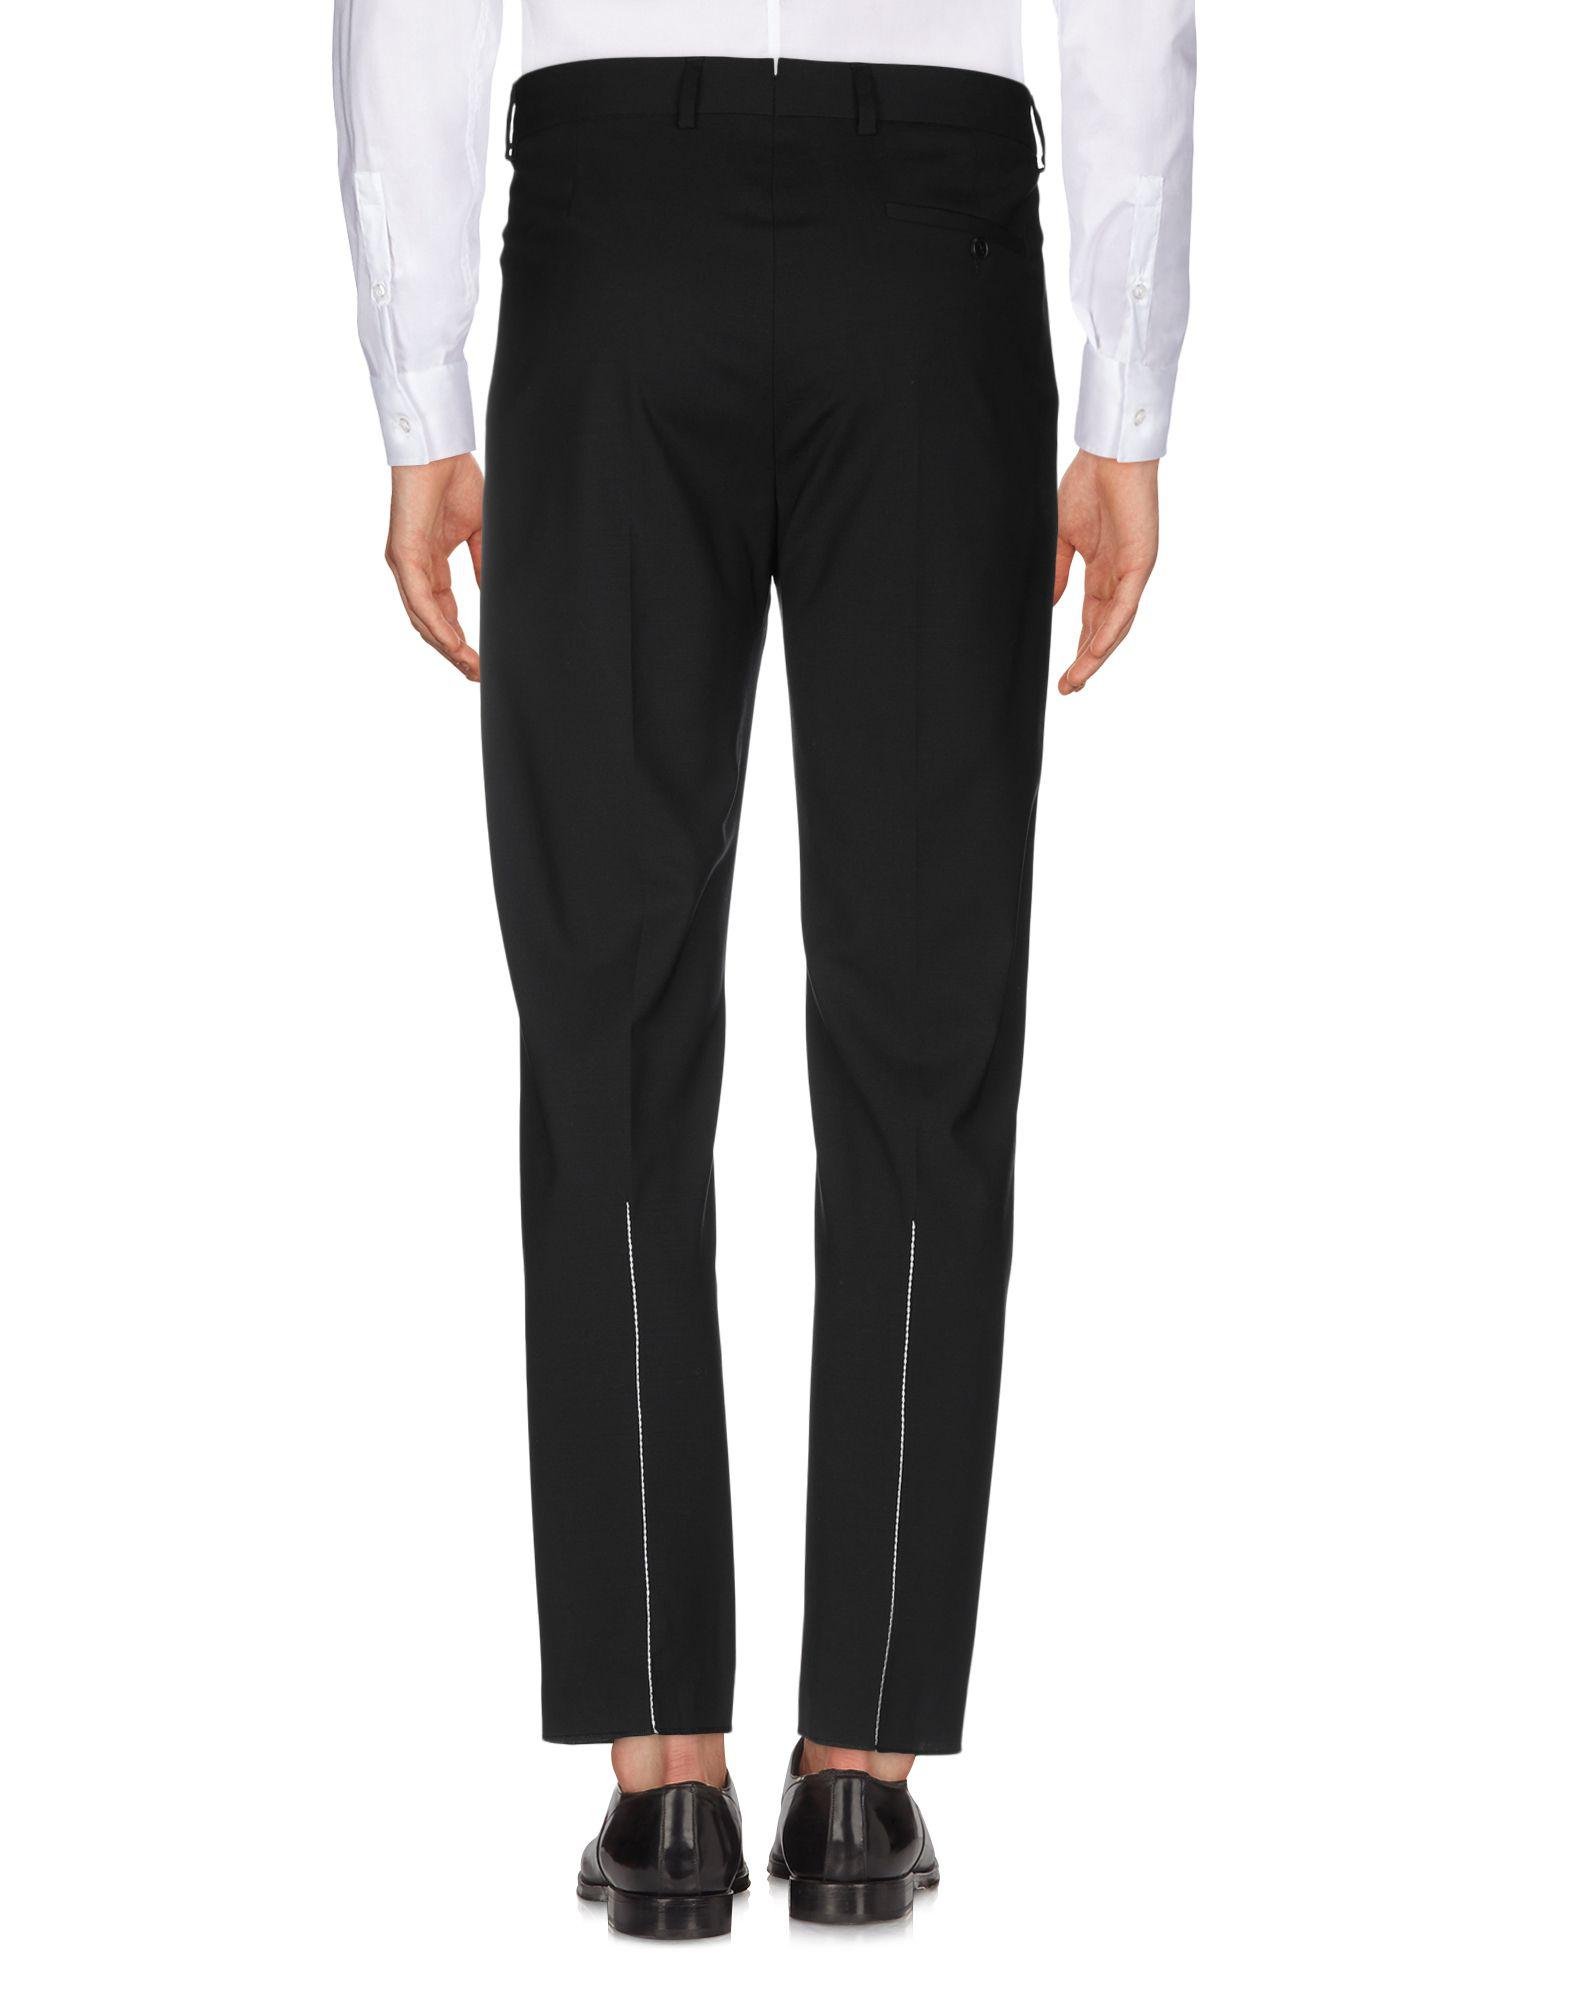 OAMC Wool Casual Trouser in Black for Men - Lyst